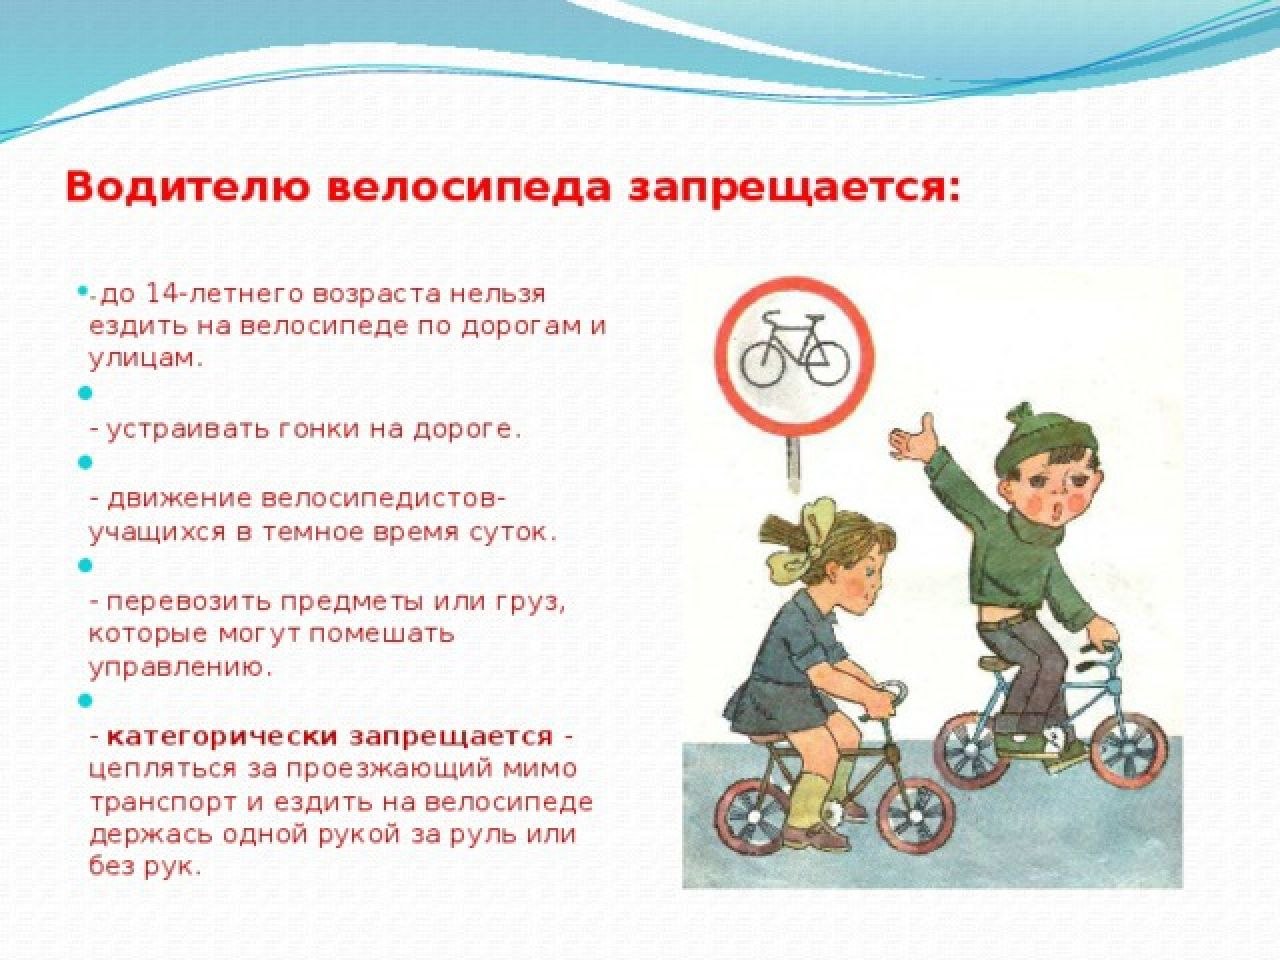 4 апреля что можно и нельзя. Что запрещается водителю велосипеда. Памятка водителям велосипеда запрещается. Что запрещается делать велосипедисту. Велосипедисту запрещается ездить по.